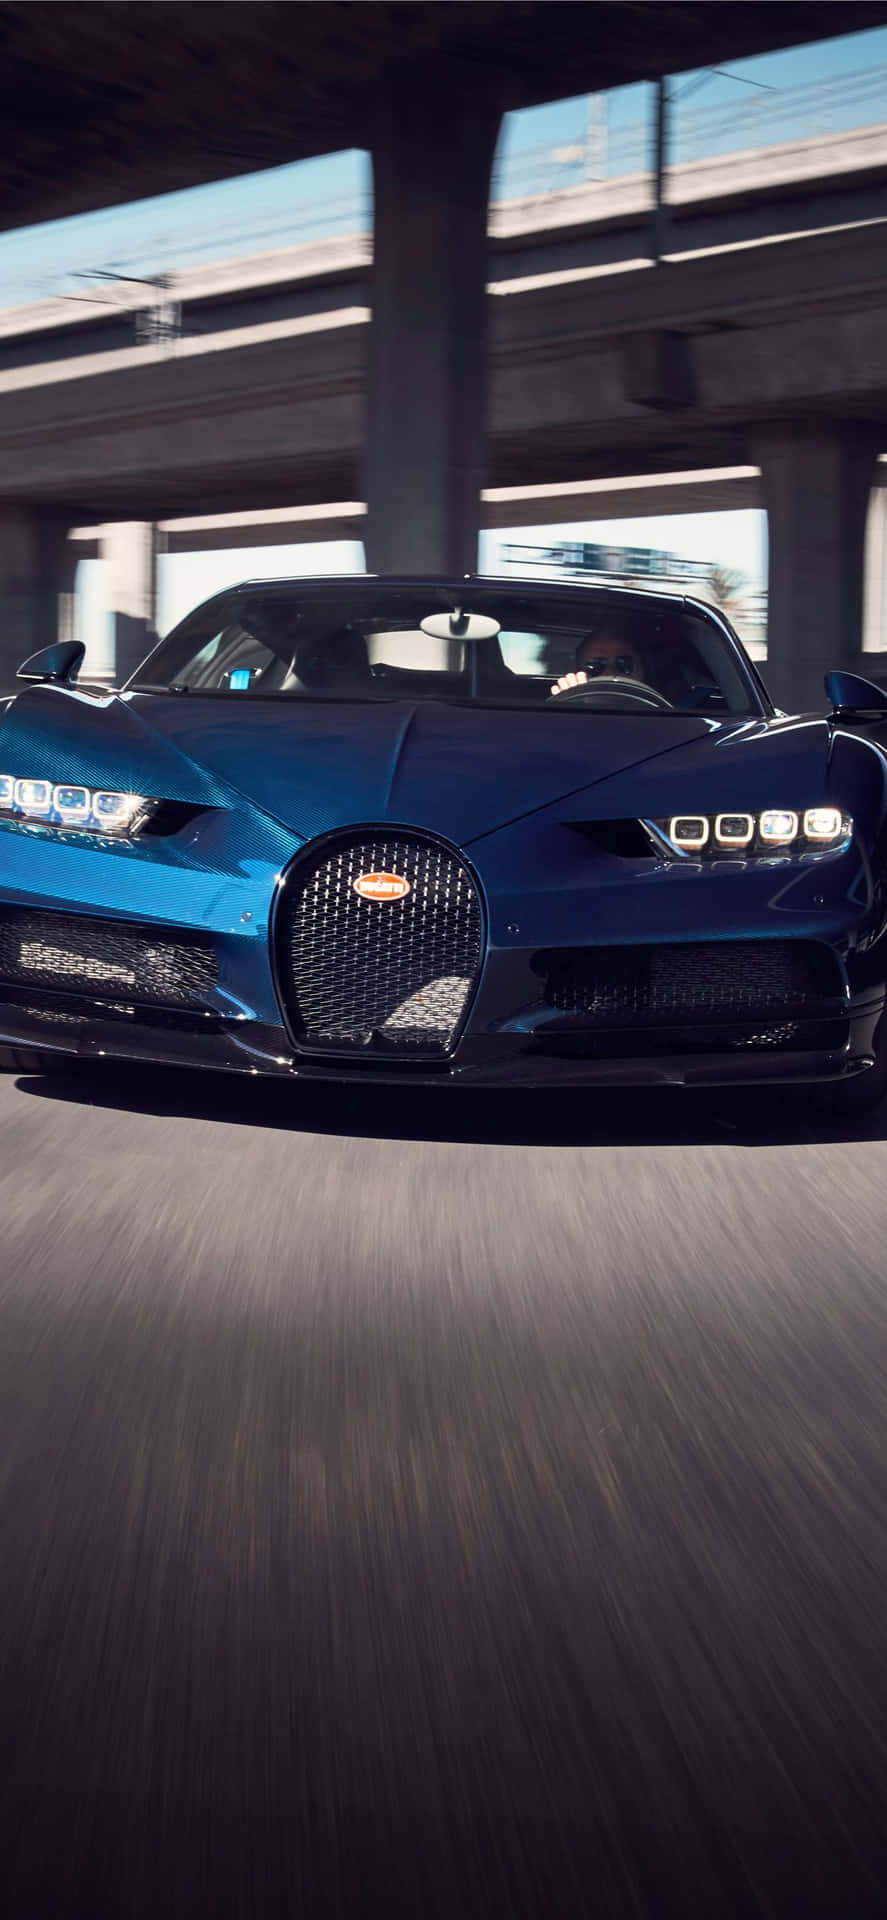 Obténla Velocidad Y El Rendimiento De Un Bugatti En Tu Teléfono. Fondo de pantalla